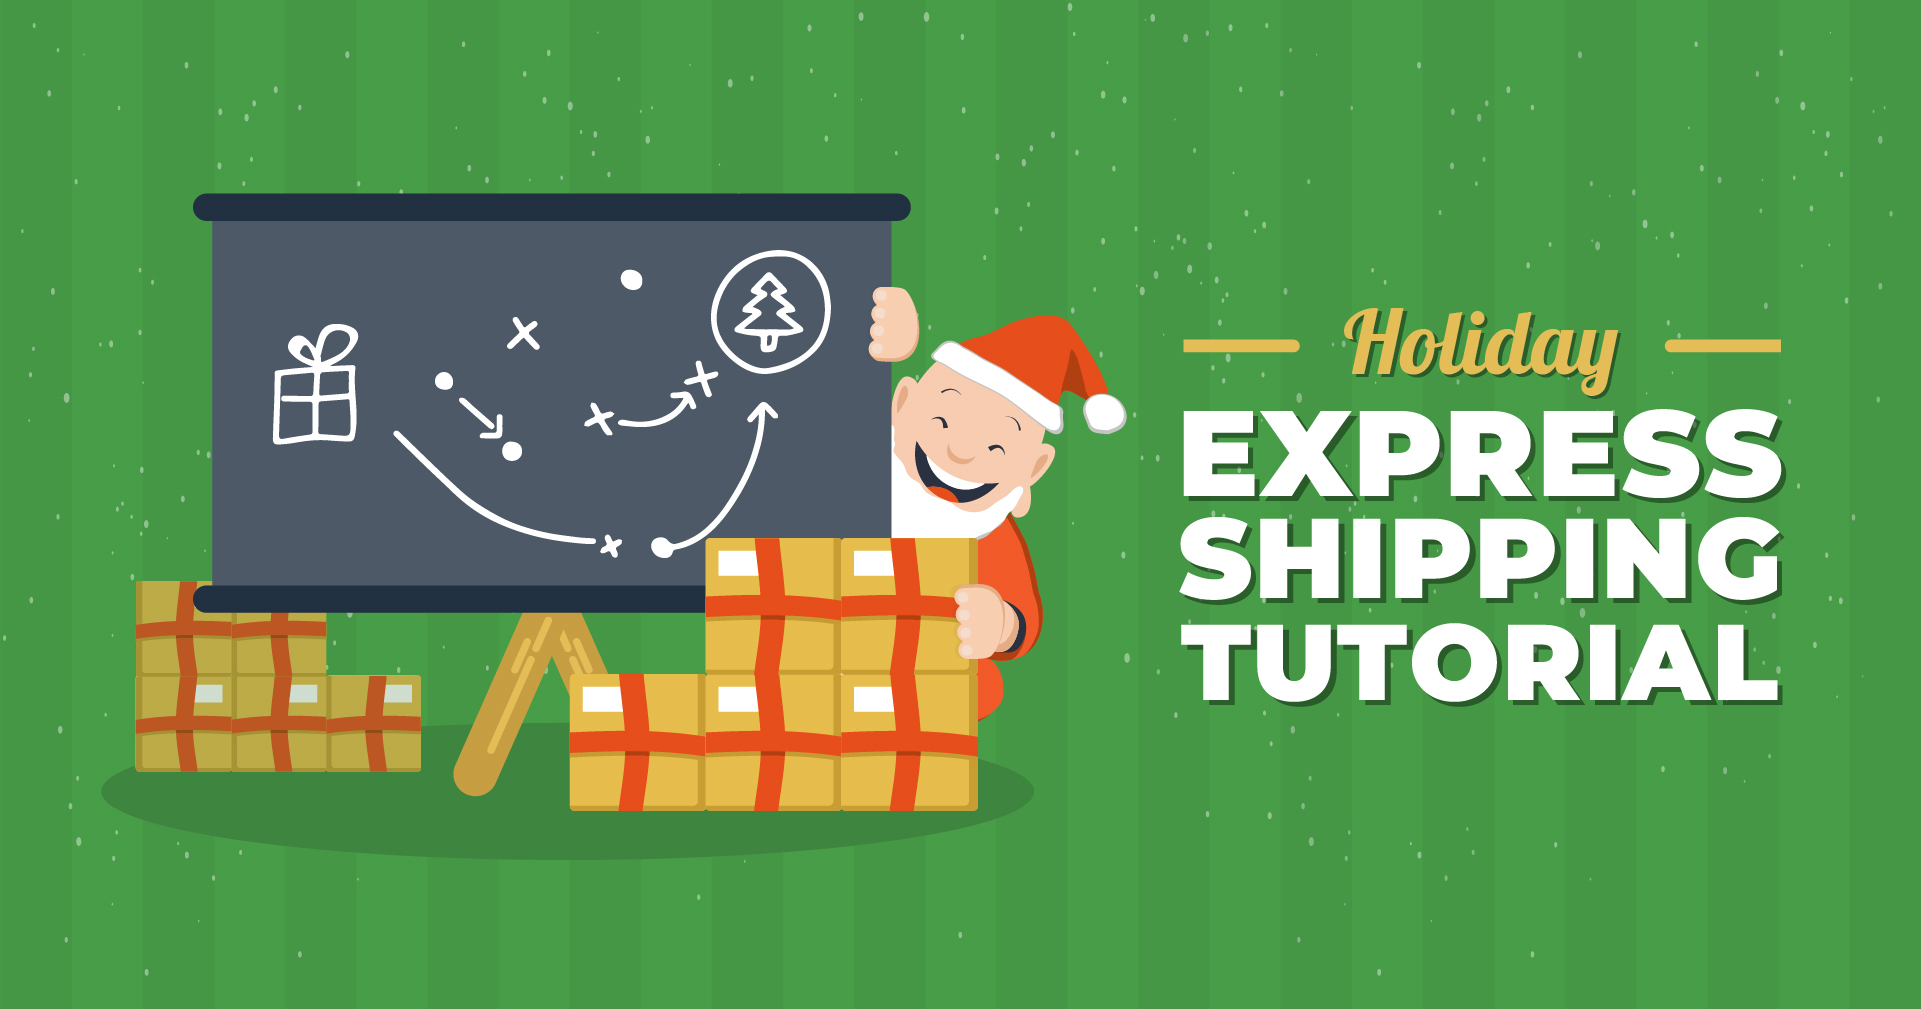 Holiday Express Shipping Tutorial